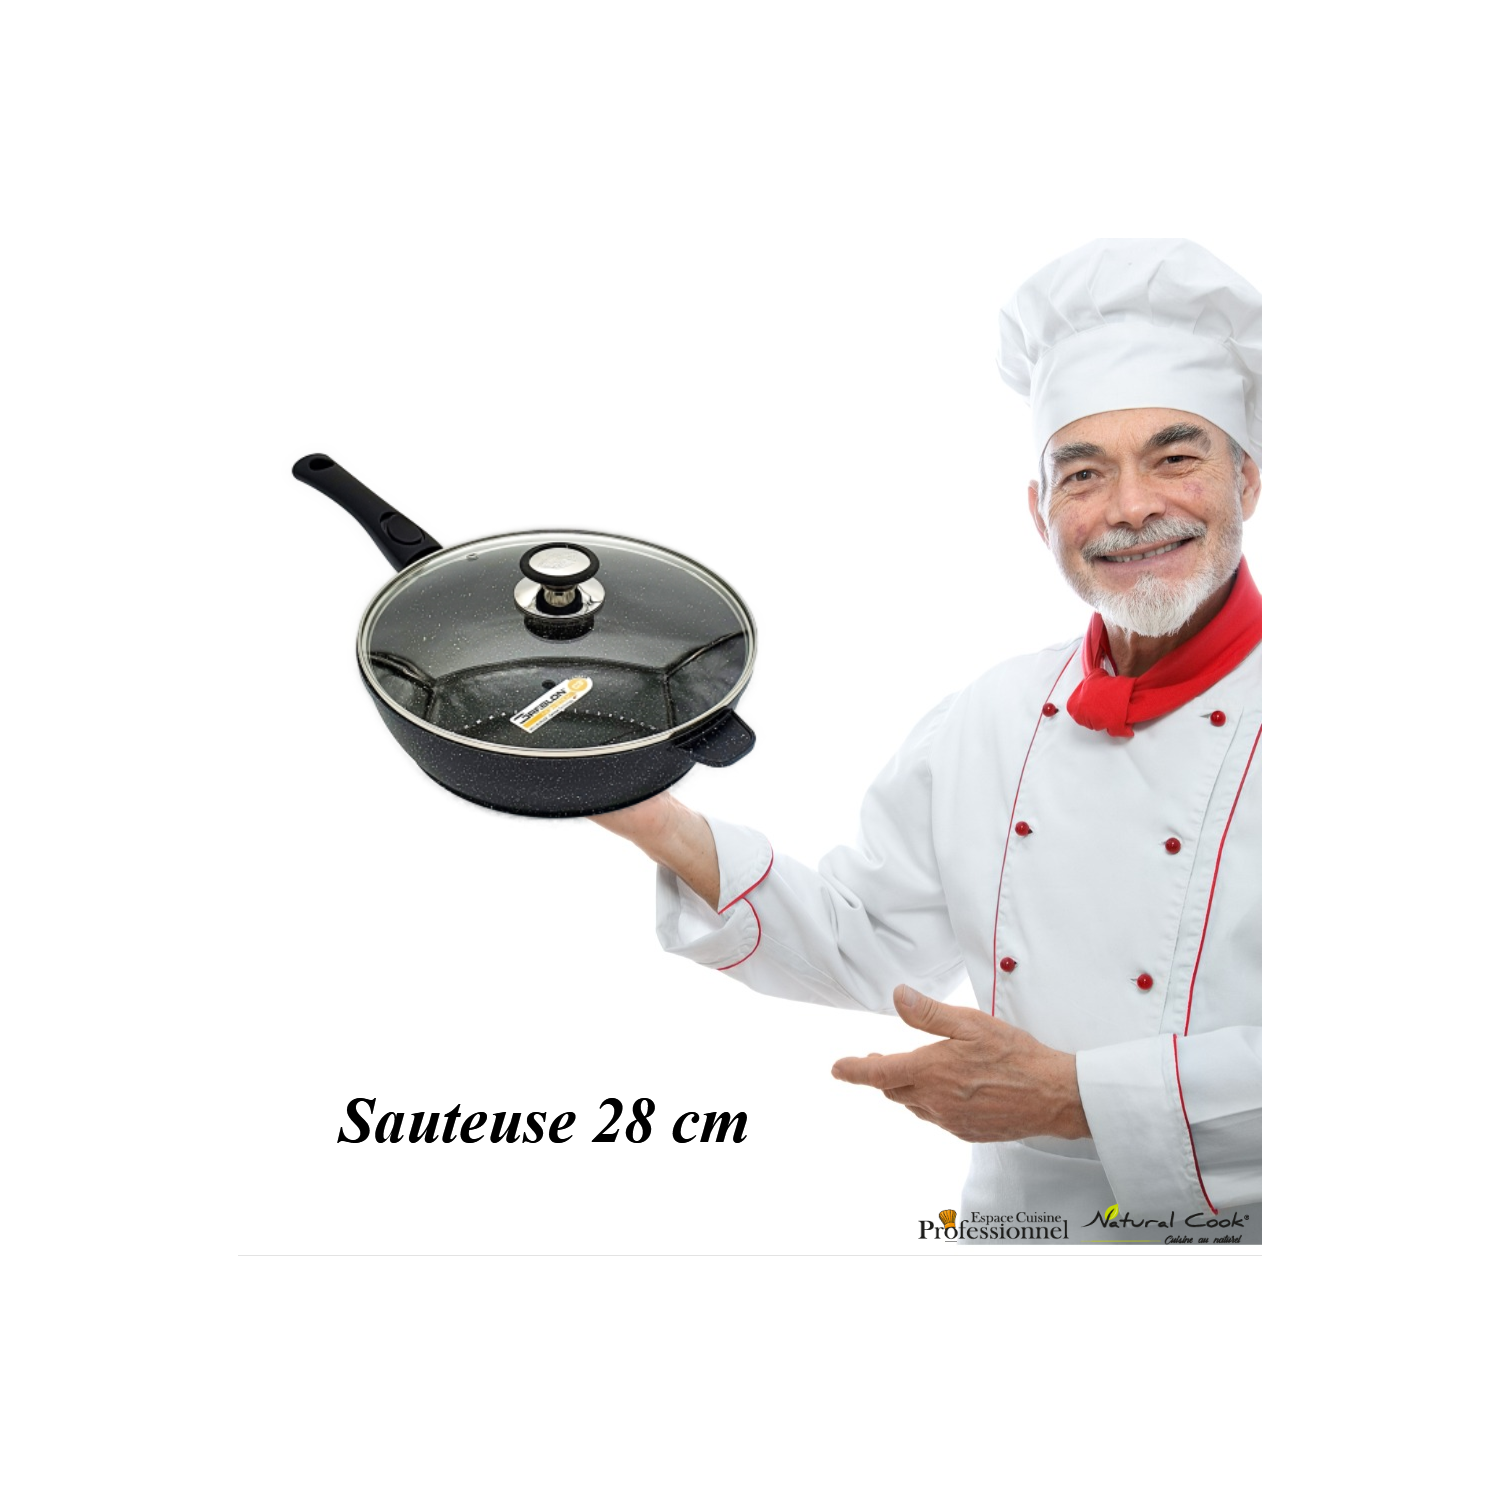 Sauteuse 28 cm Espace cuisine Pro collection 2022